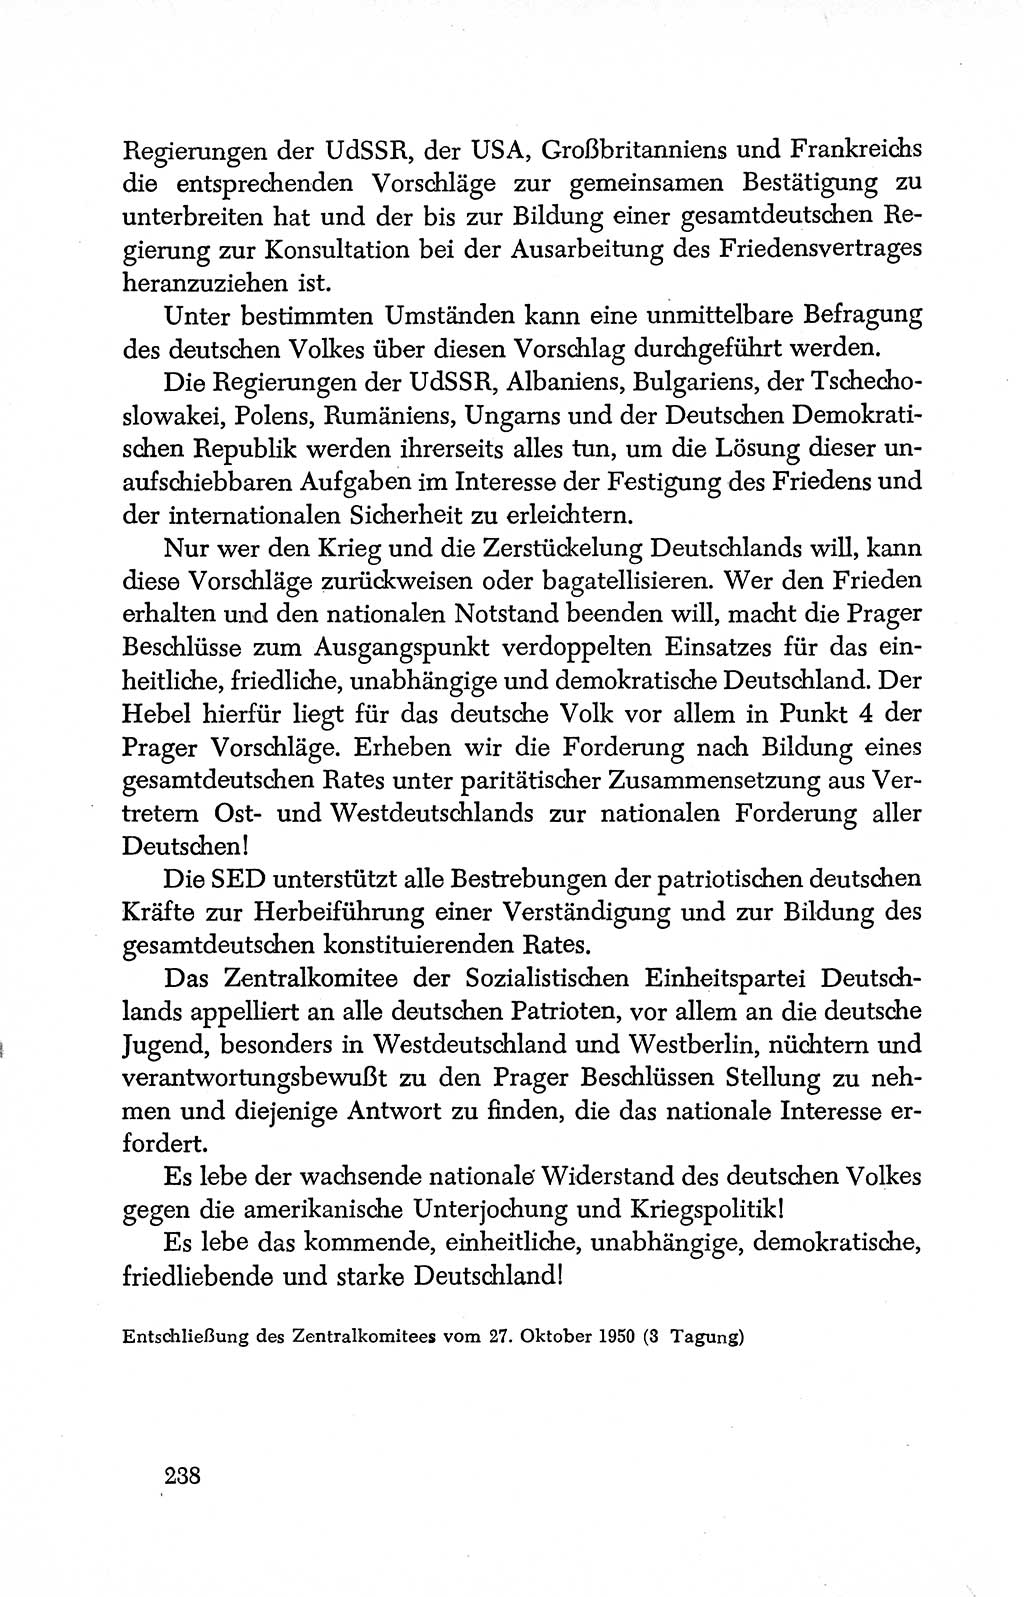 Dokumente der Sozialistischen Einheitspartei Deutschlands (SED) [Deutsche Demokratische Republik (DDR)] 1950-1952, Seite 238 (Dok. SED DDR 1950-1952, S. 238)